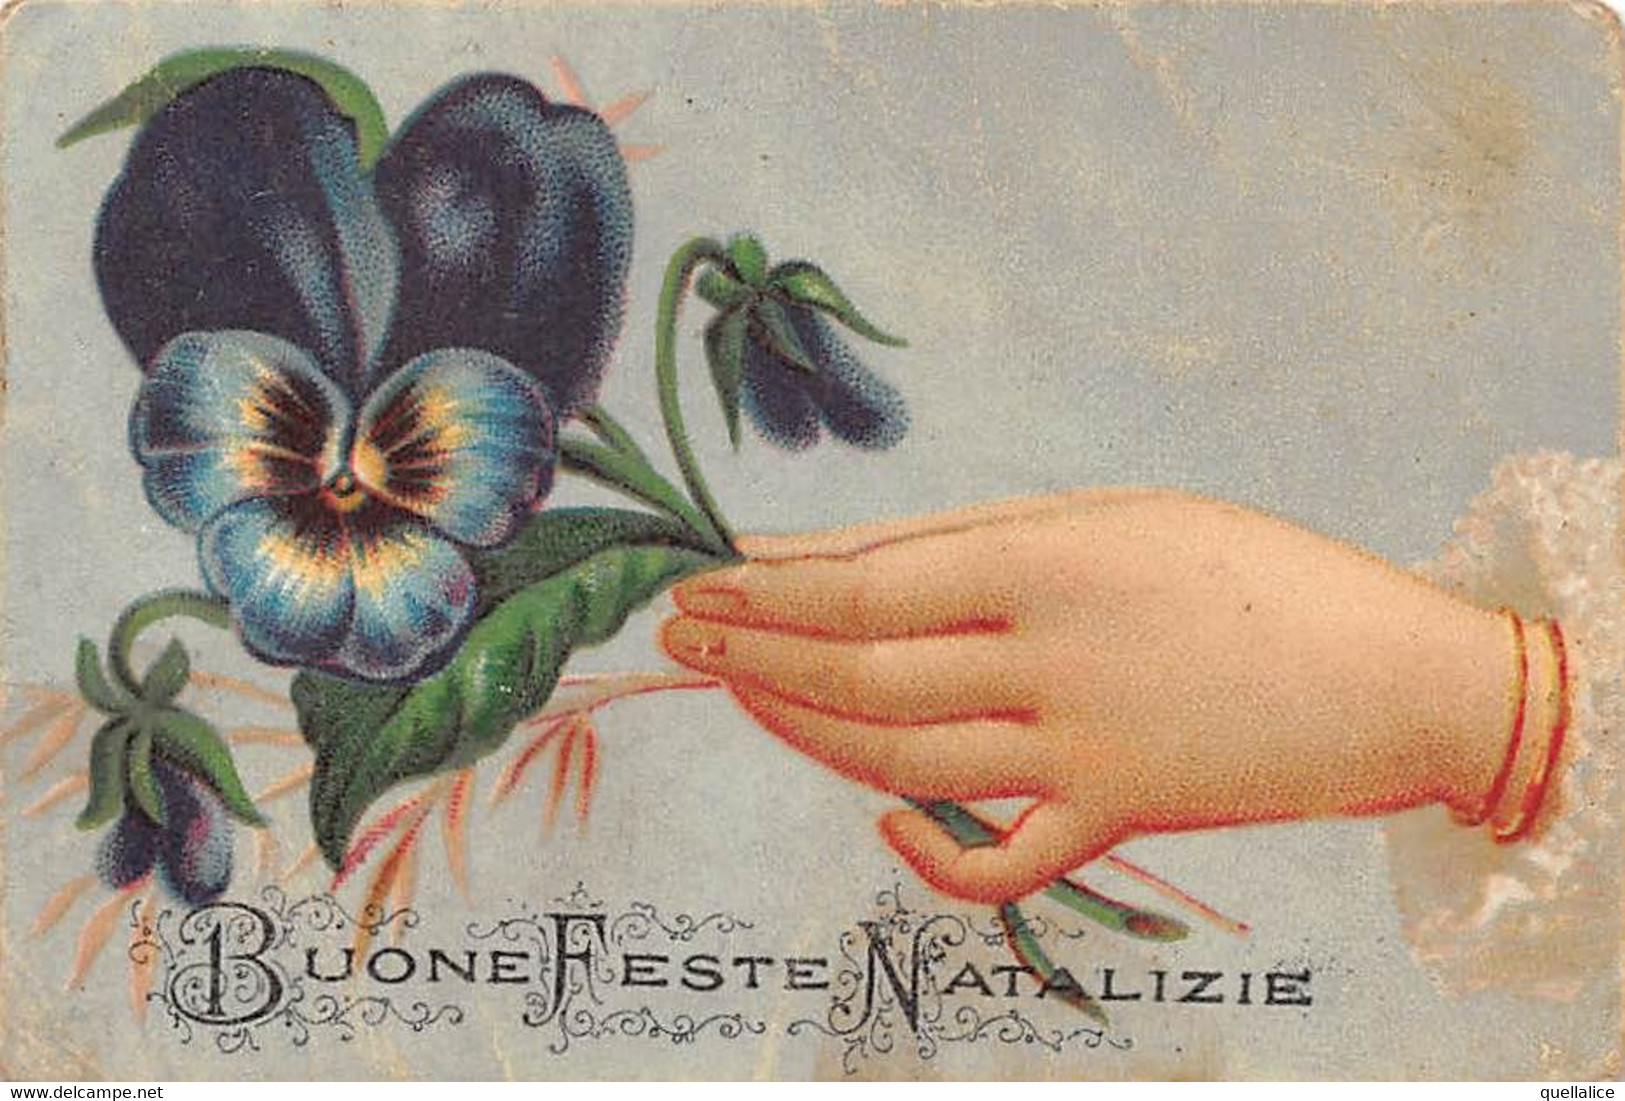 02792  "BUONE FESTE NATALIZIE" CARTONC. AUGURALE, CROMOLITHO FINE XIX SEC. - Exlibris